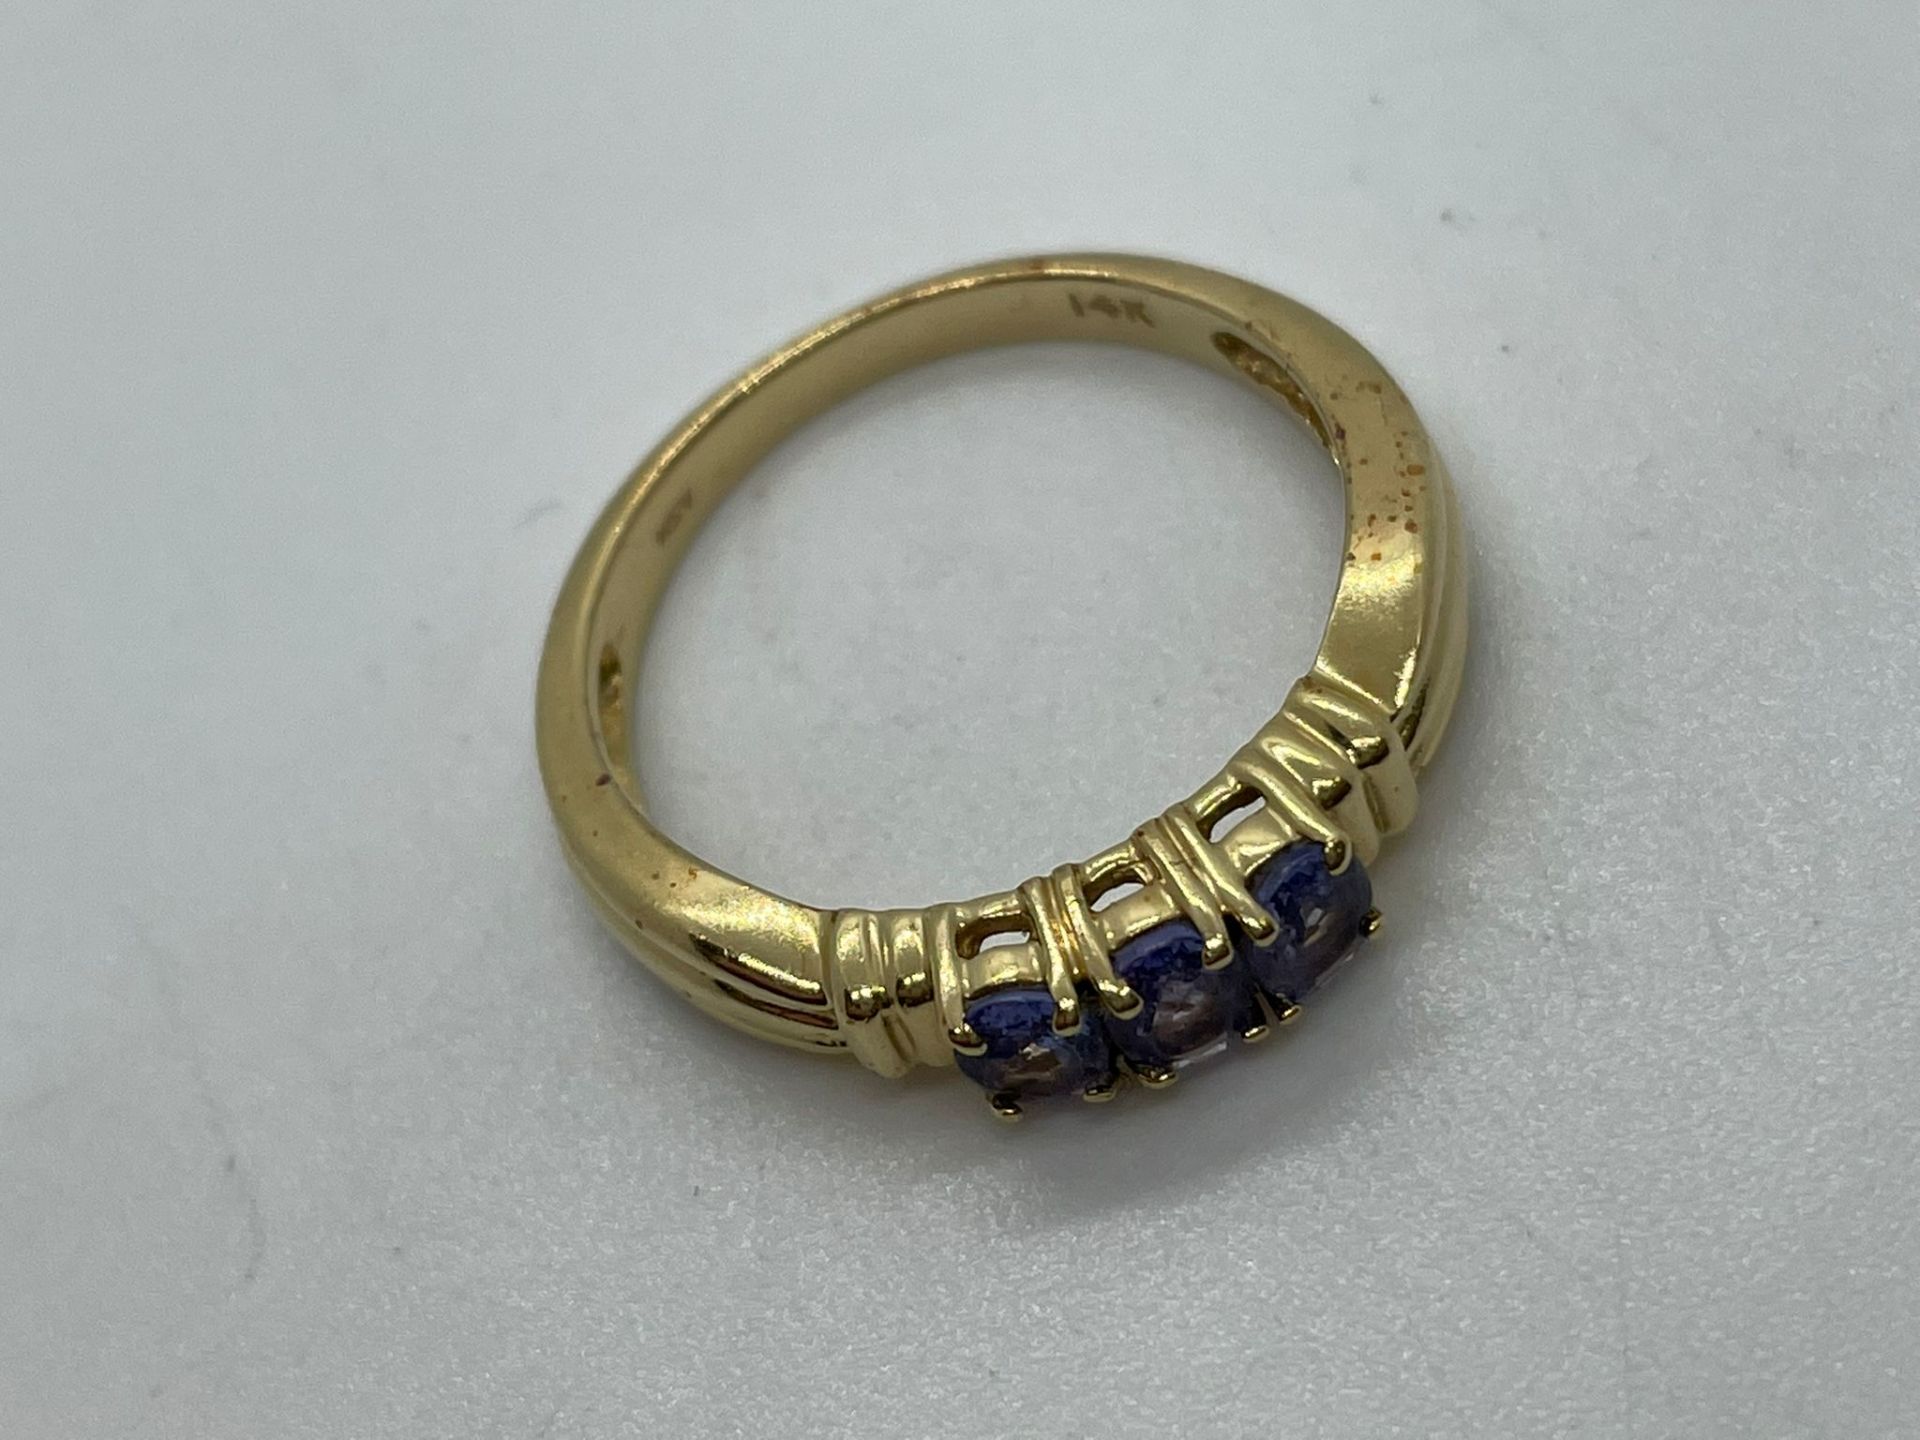 14ct gold tanzanite ring - Image 2 of 2